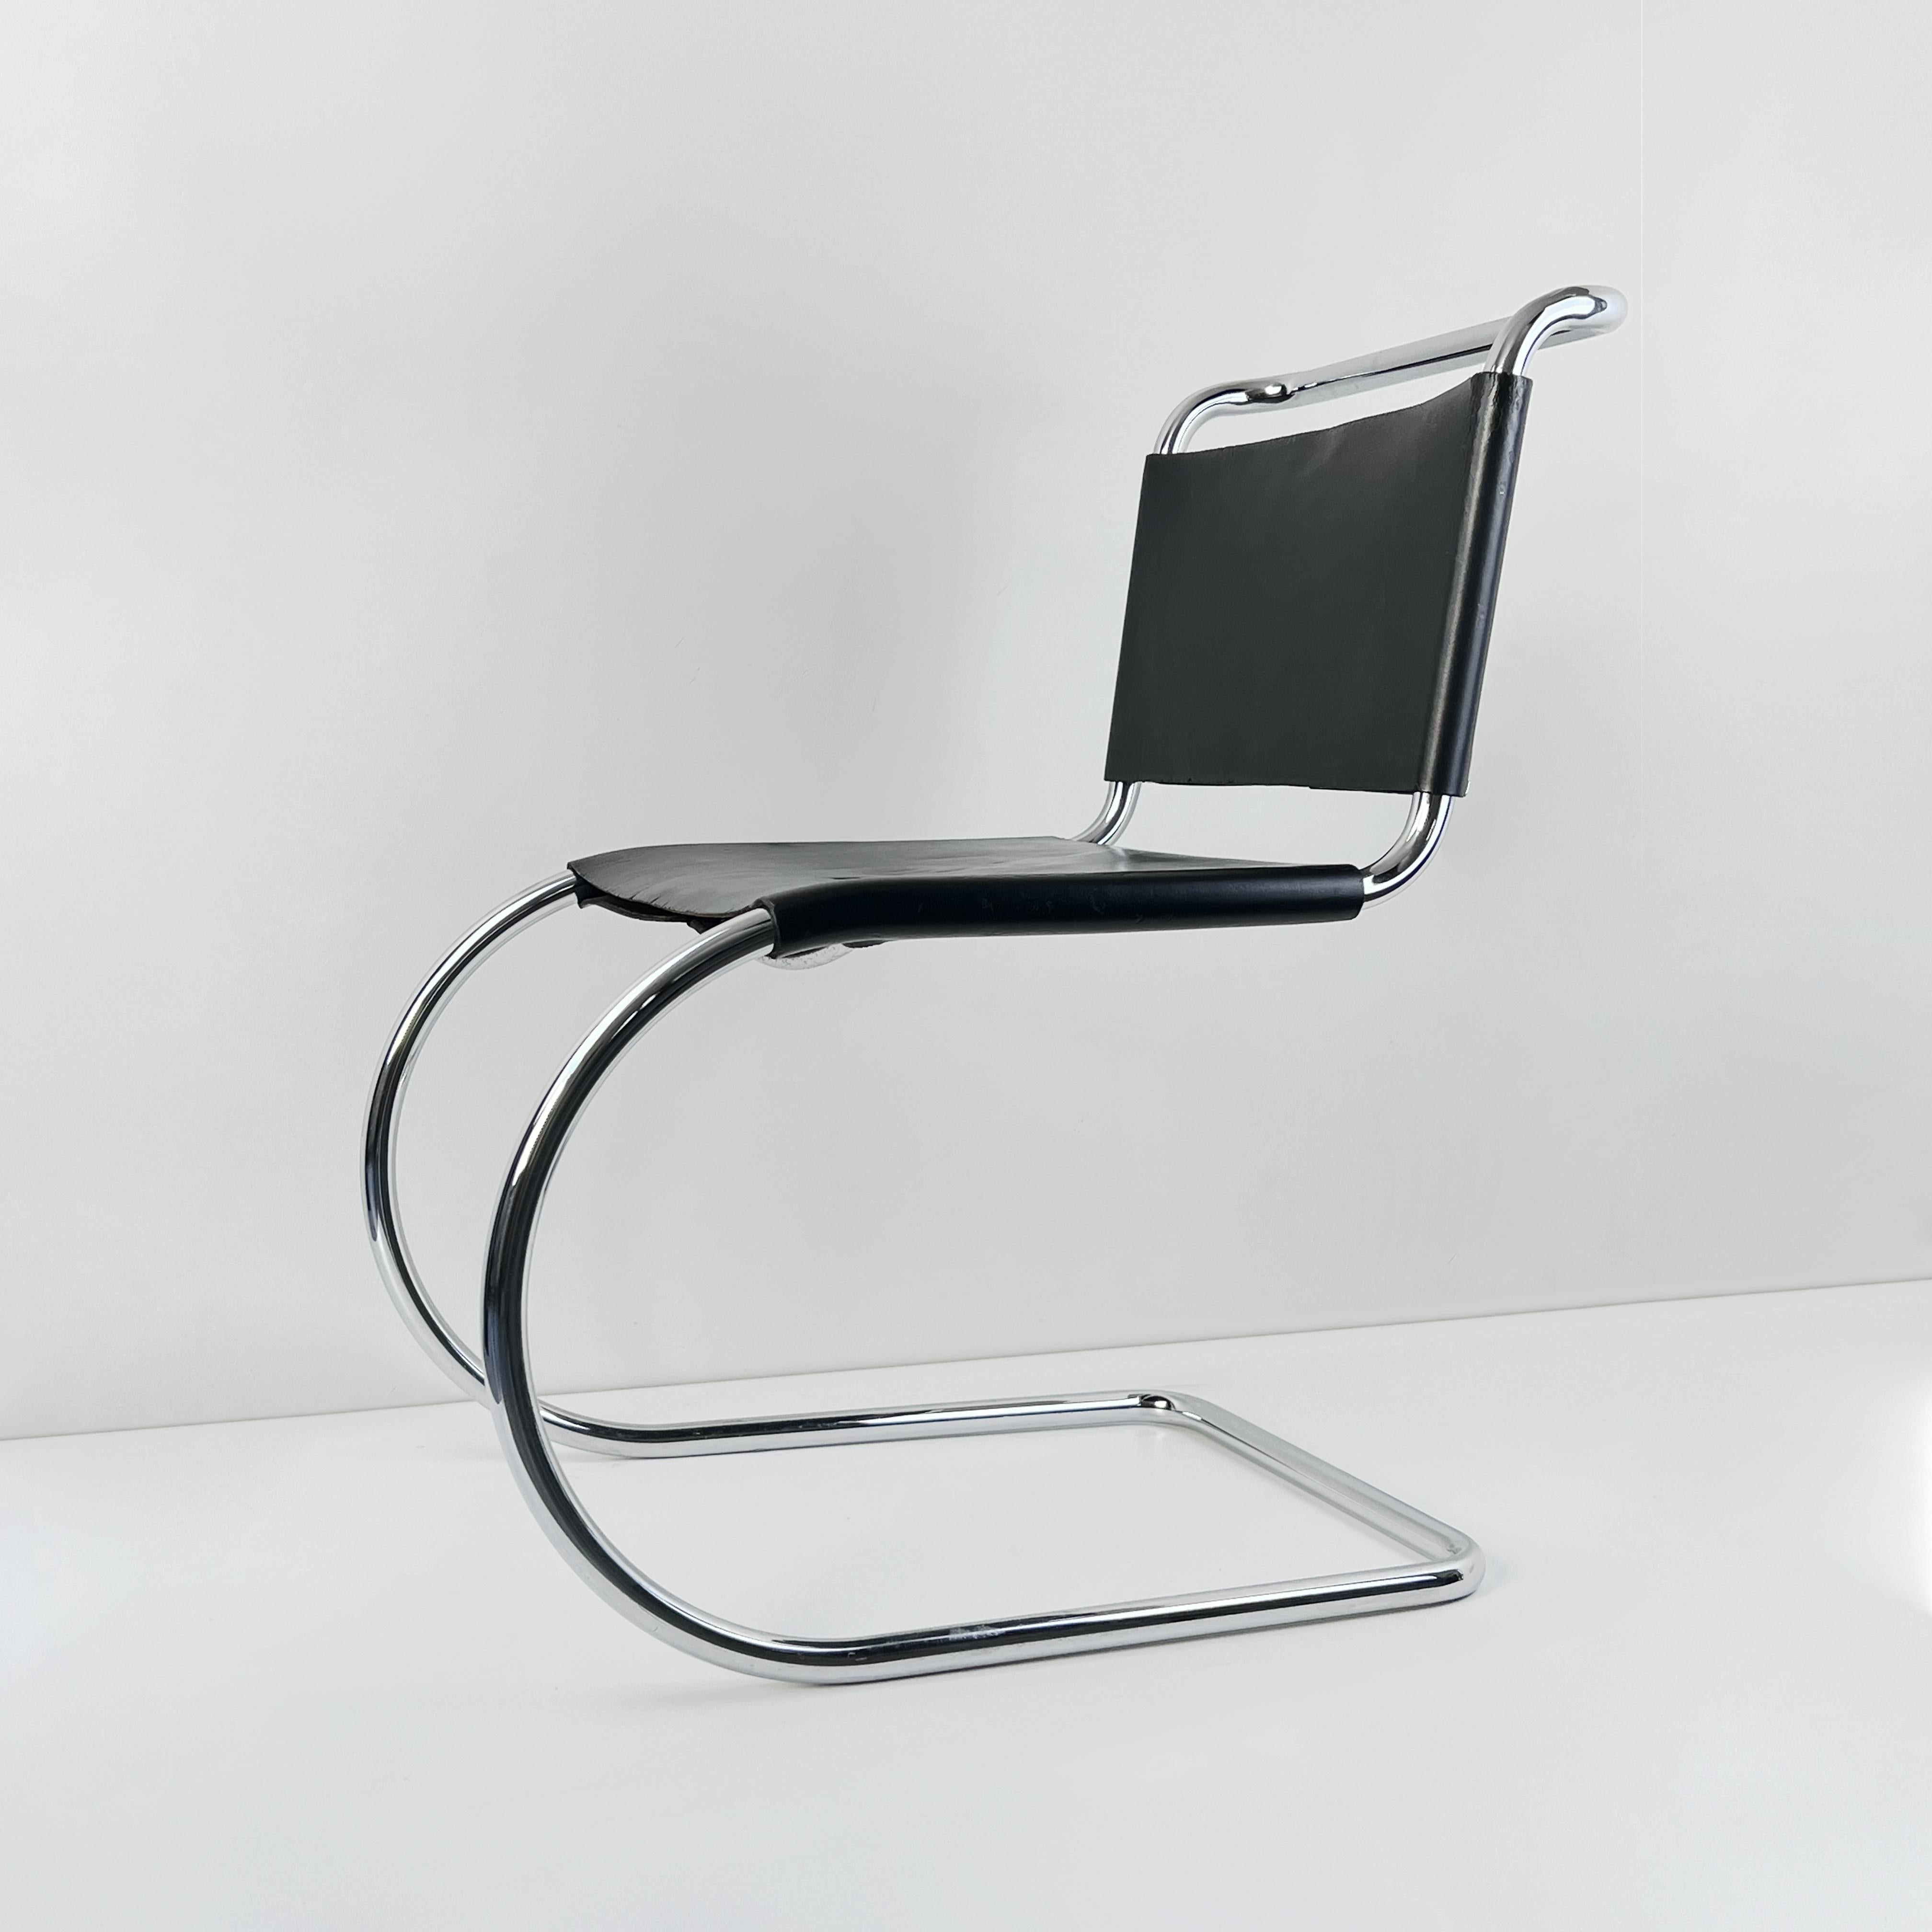 Die MR10-Stühle, die für Knoll produziert werden, sind ein originelles Möbeldesign von Mies van der Rohe. Die Gestelle dieser ikonischen Vintage-Stühle sind von Marcel Breuer, einem Kollegen des Bauhauses, inspiriert. Aus dickem Leder gefertigt und